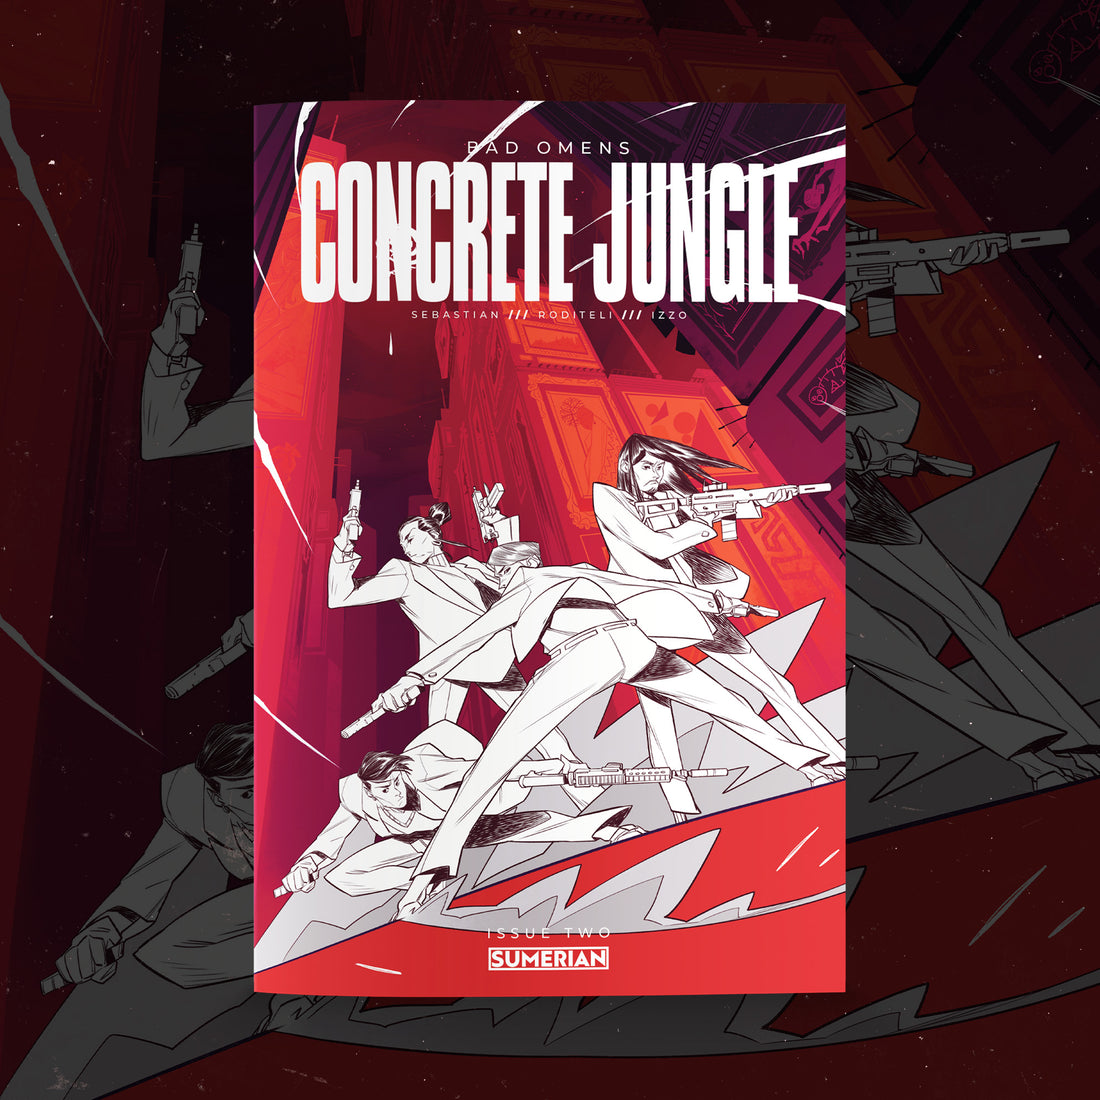 Bad Omens: Concrete Jungle #2